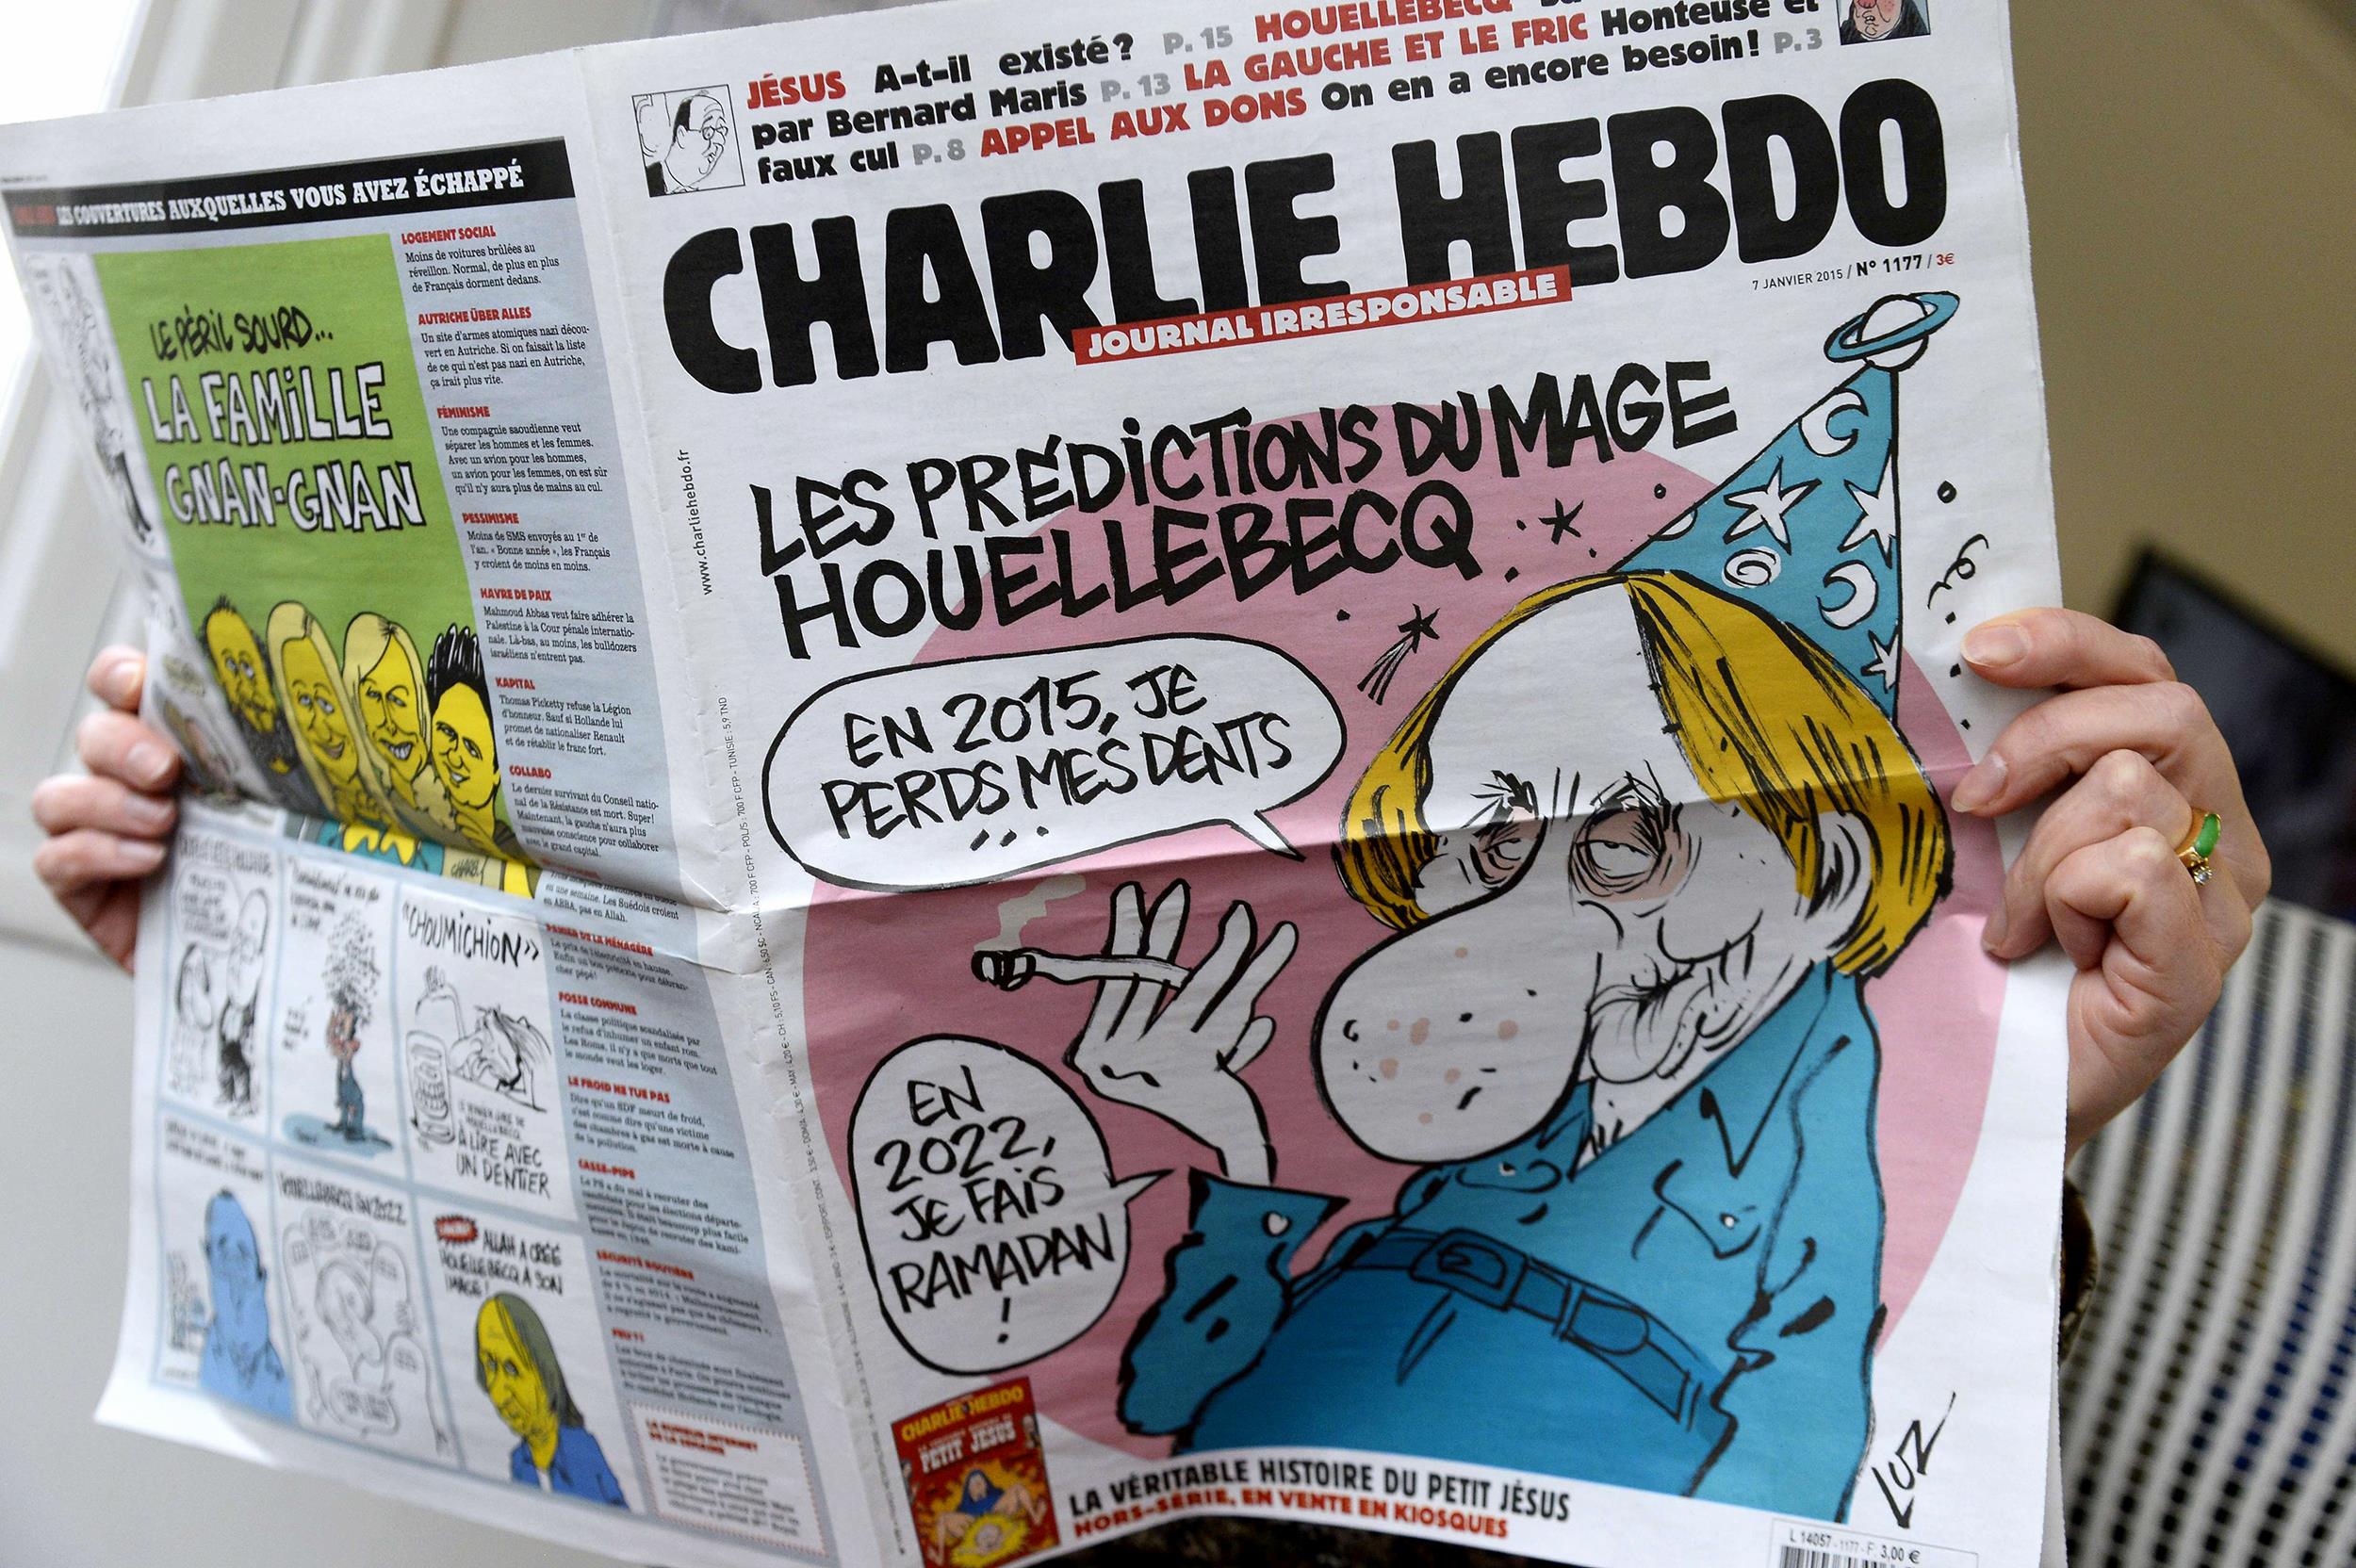 Броят на „Шарли Ебдо&quot; от деня на атентата струва 75 000 евро в eBay